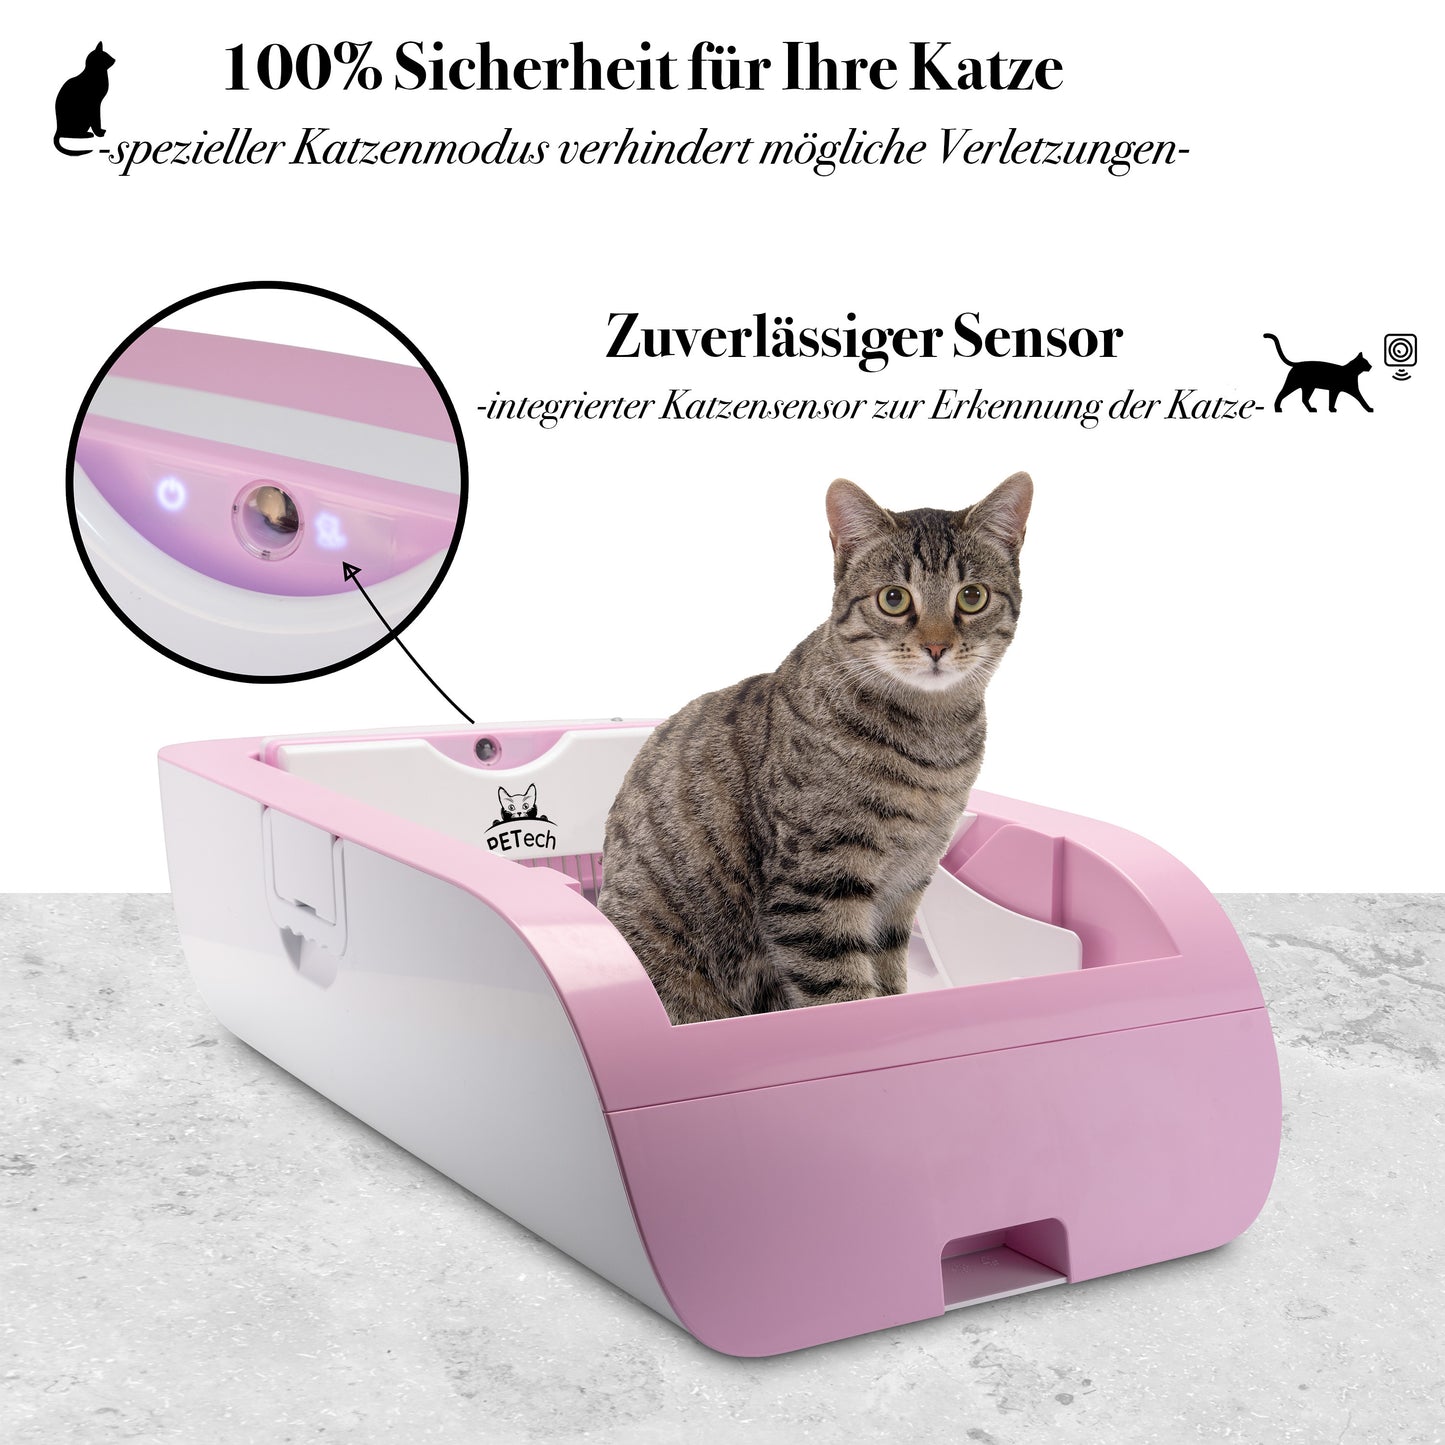 PETECH EvoScoop Selbstreinigendes Katzenklo in Pink mit Katzensensor für höchste Sicherheit. Der Sensor gewährleistet, dass die Reinigung nur startet, wenn das Katzenklo nicht benutzt wird.